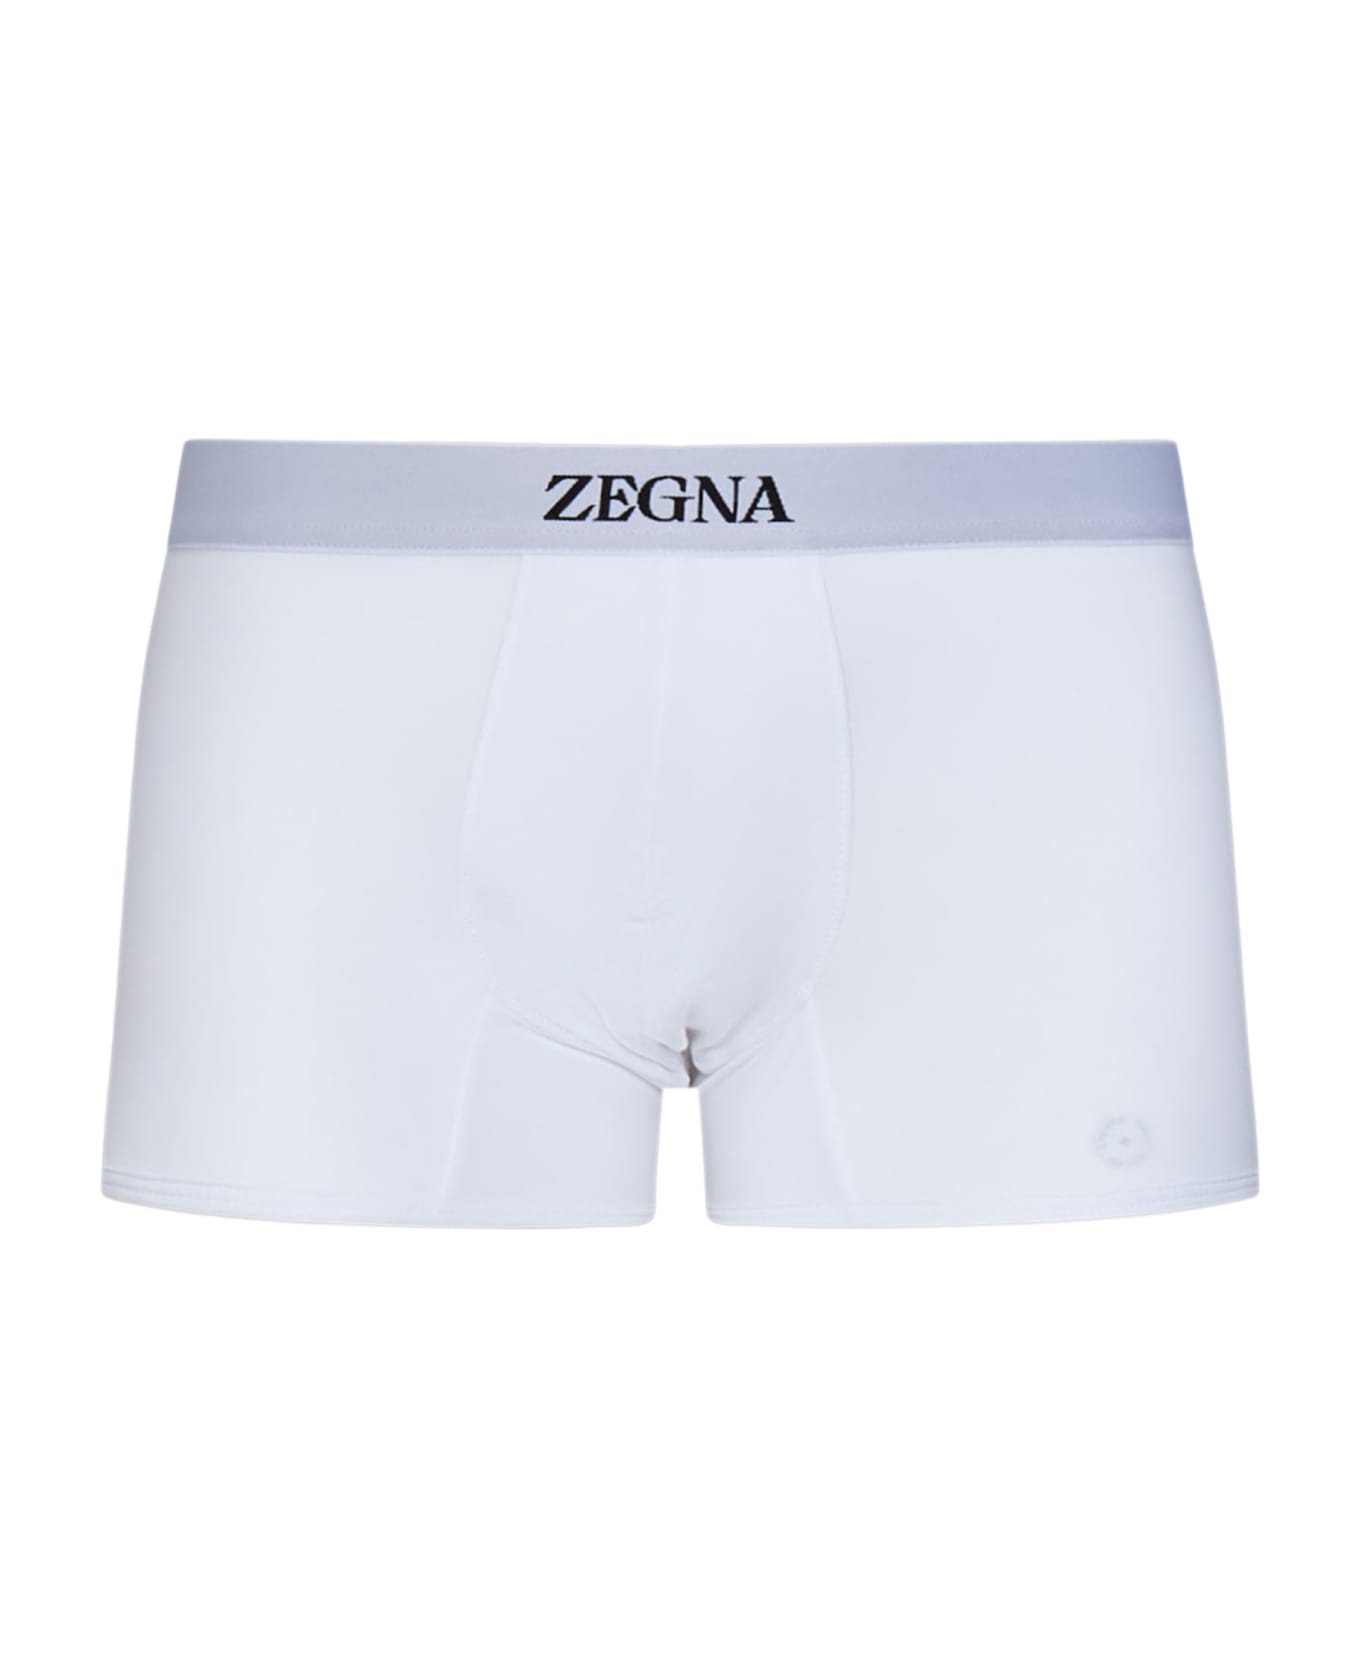 Zegna Boxer - White